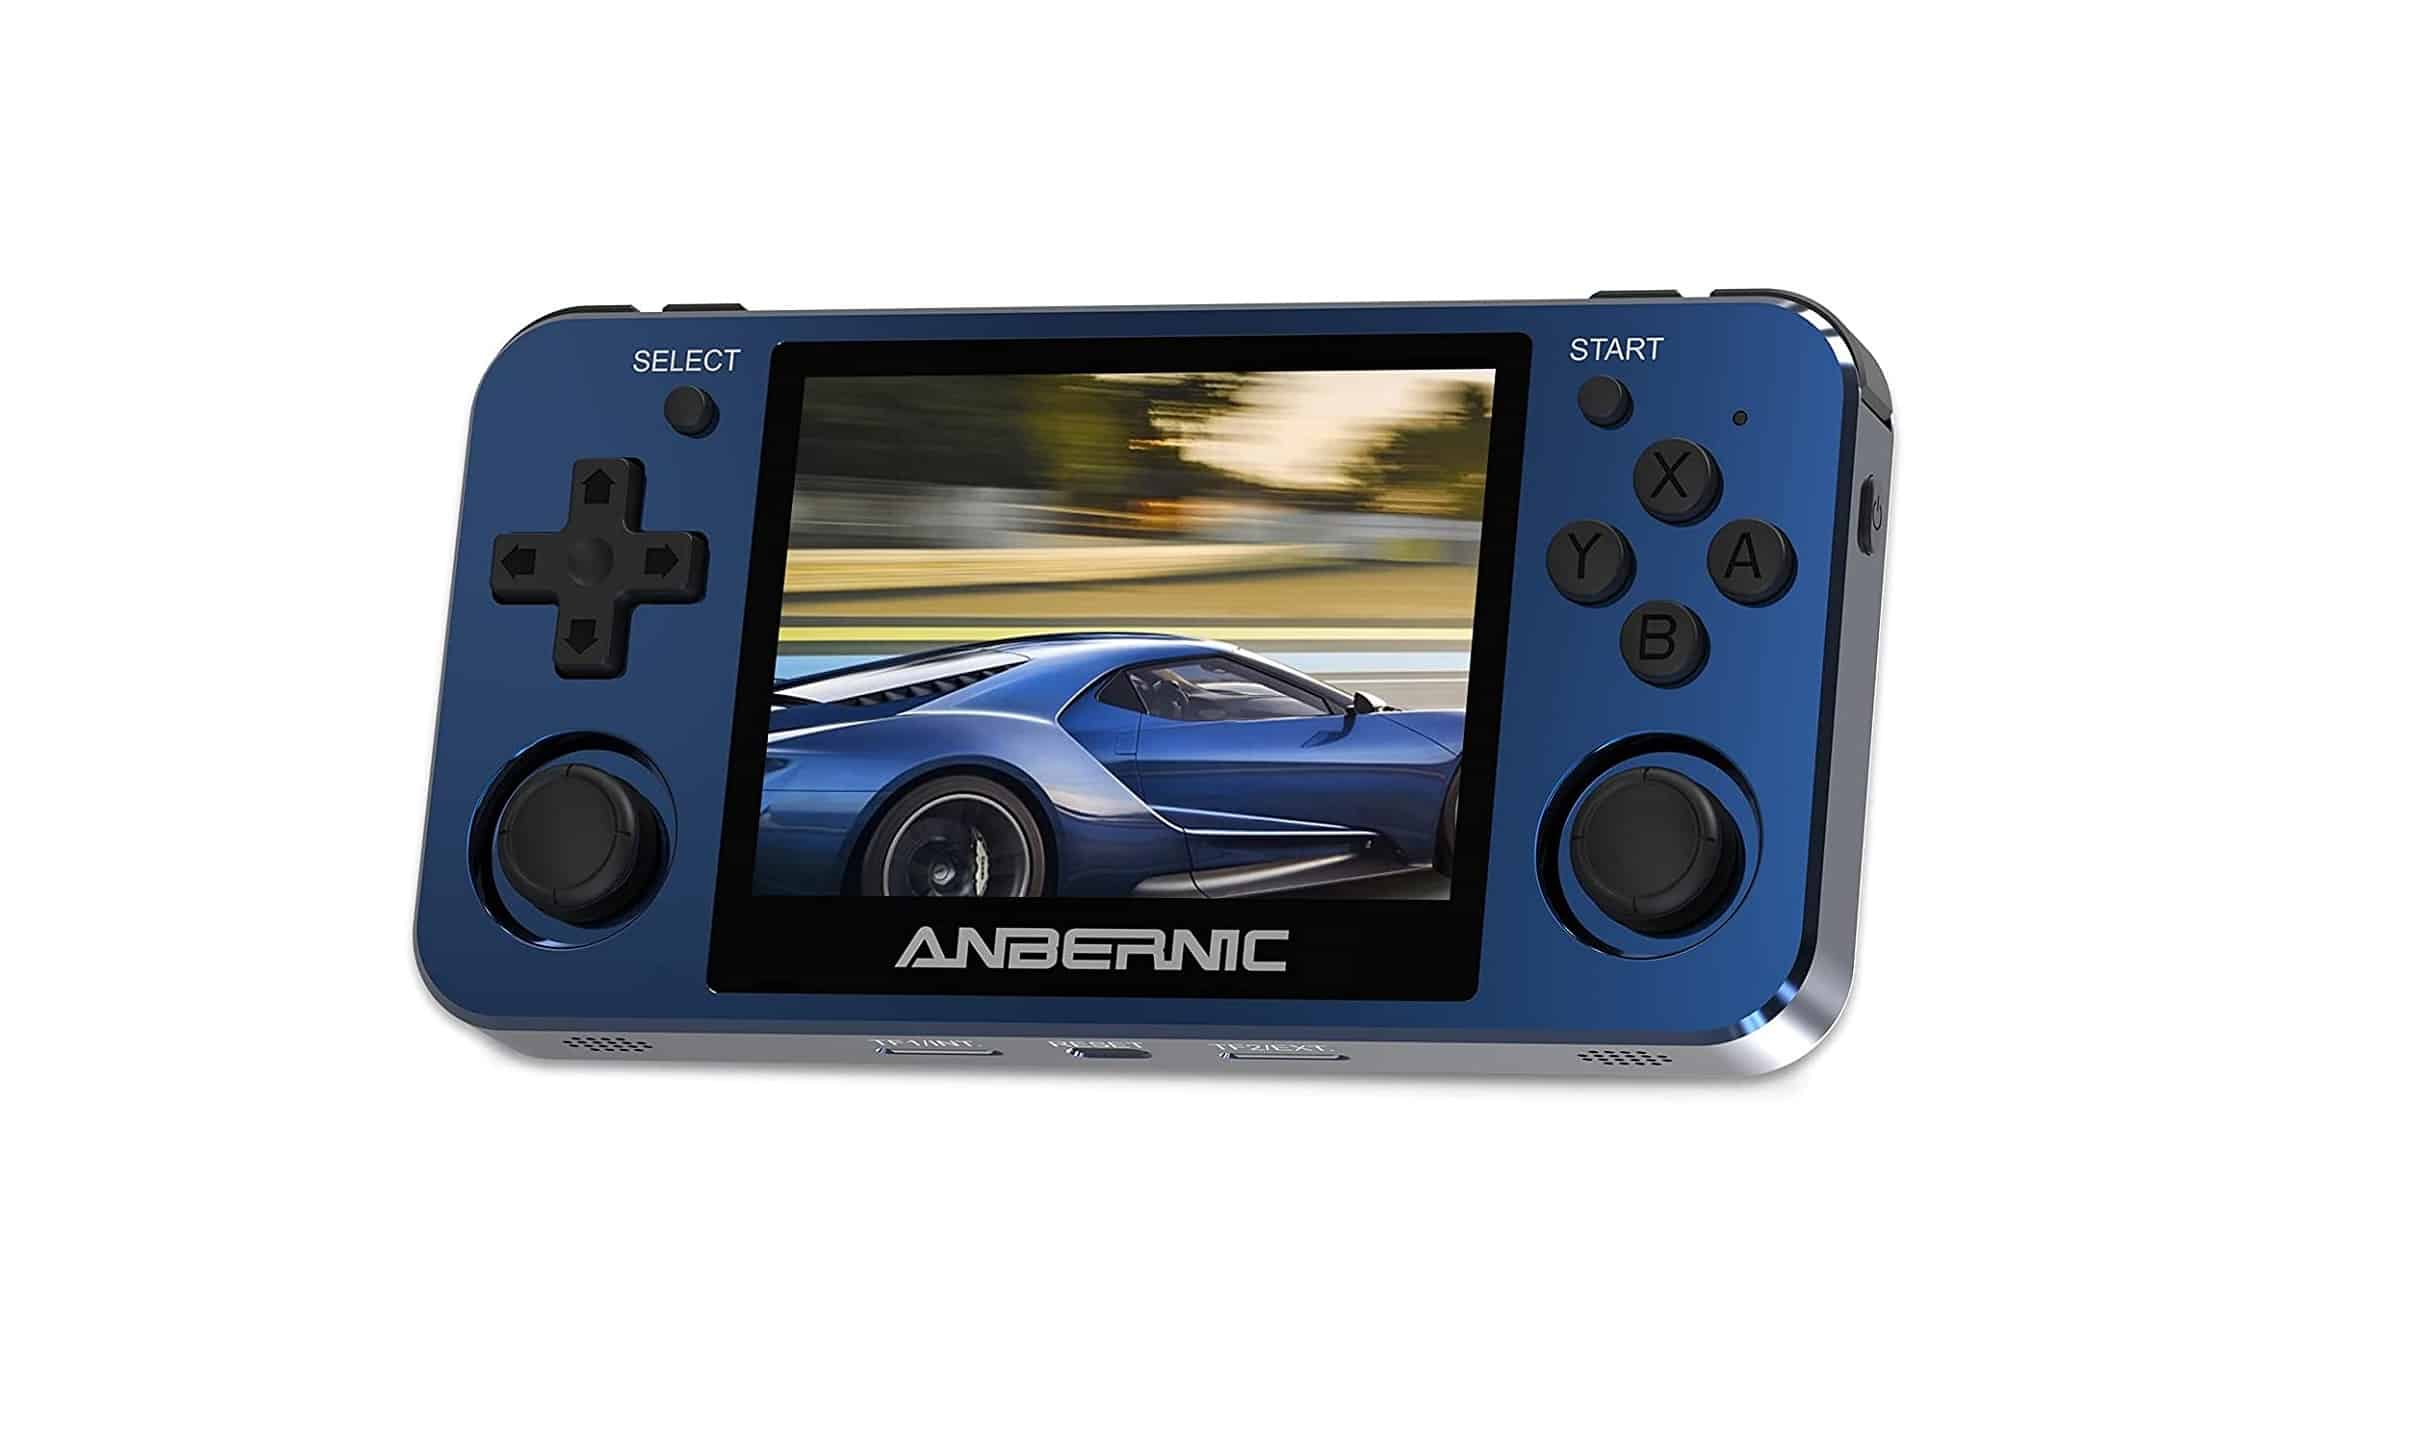 Anbernic RG351MP Handheld-Spielkonsole mit 3,5 Zoll Bildschirm